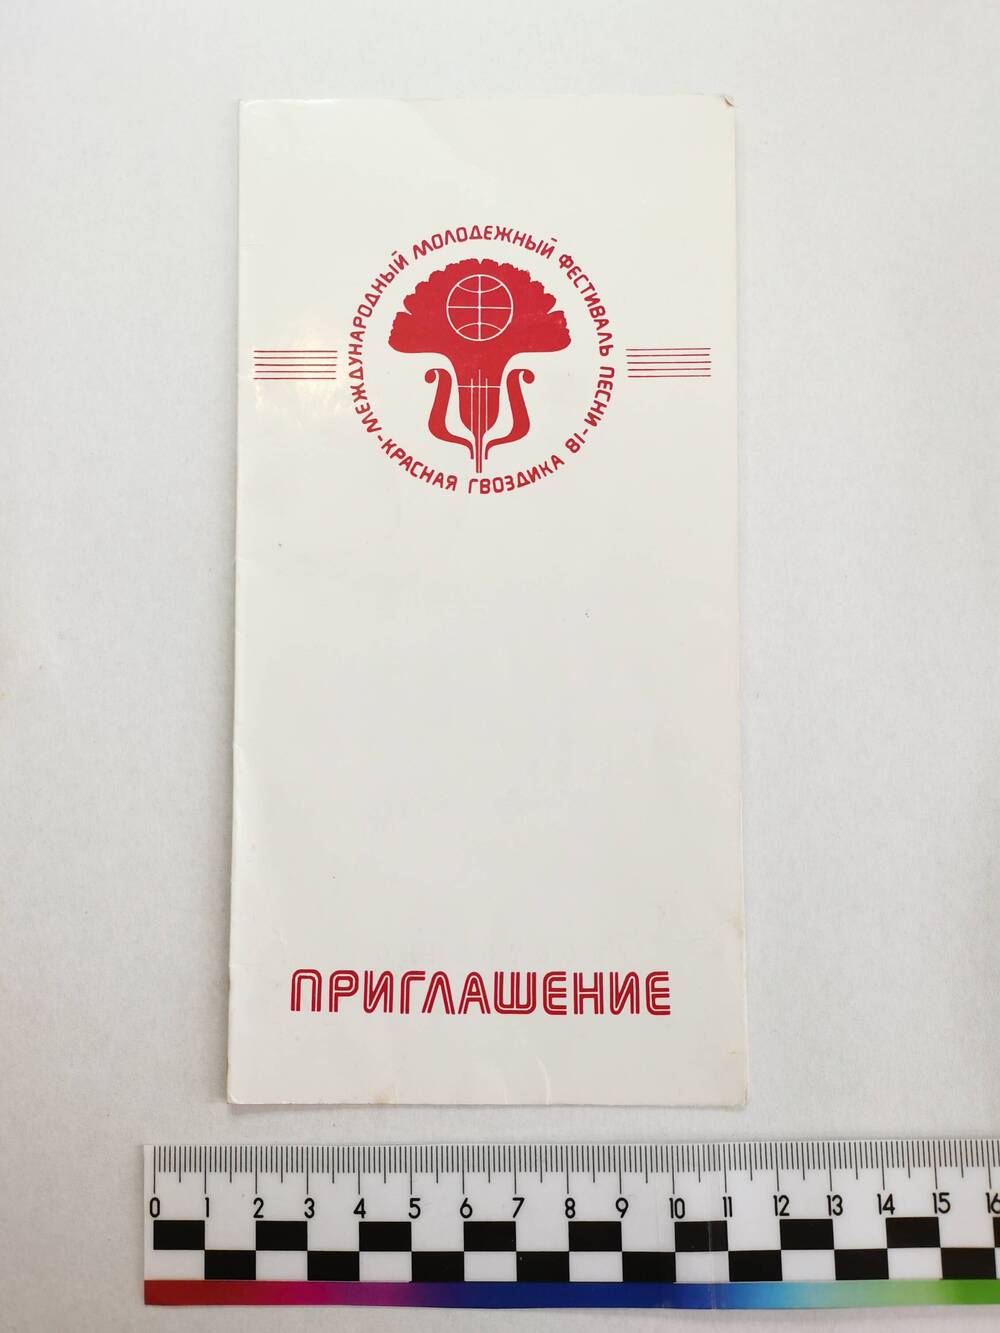 Приглашение «VII Международный молодежный фестиваль песни «Красная гвоздика 81». СССР, г. Сочи, 1981 г.